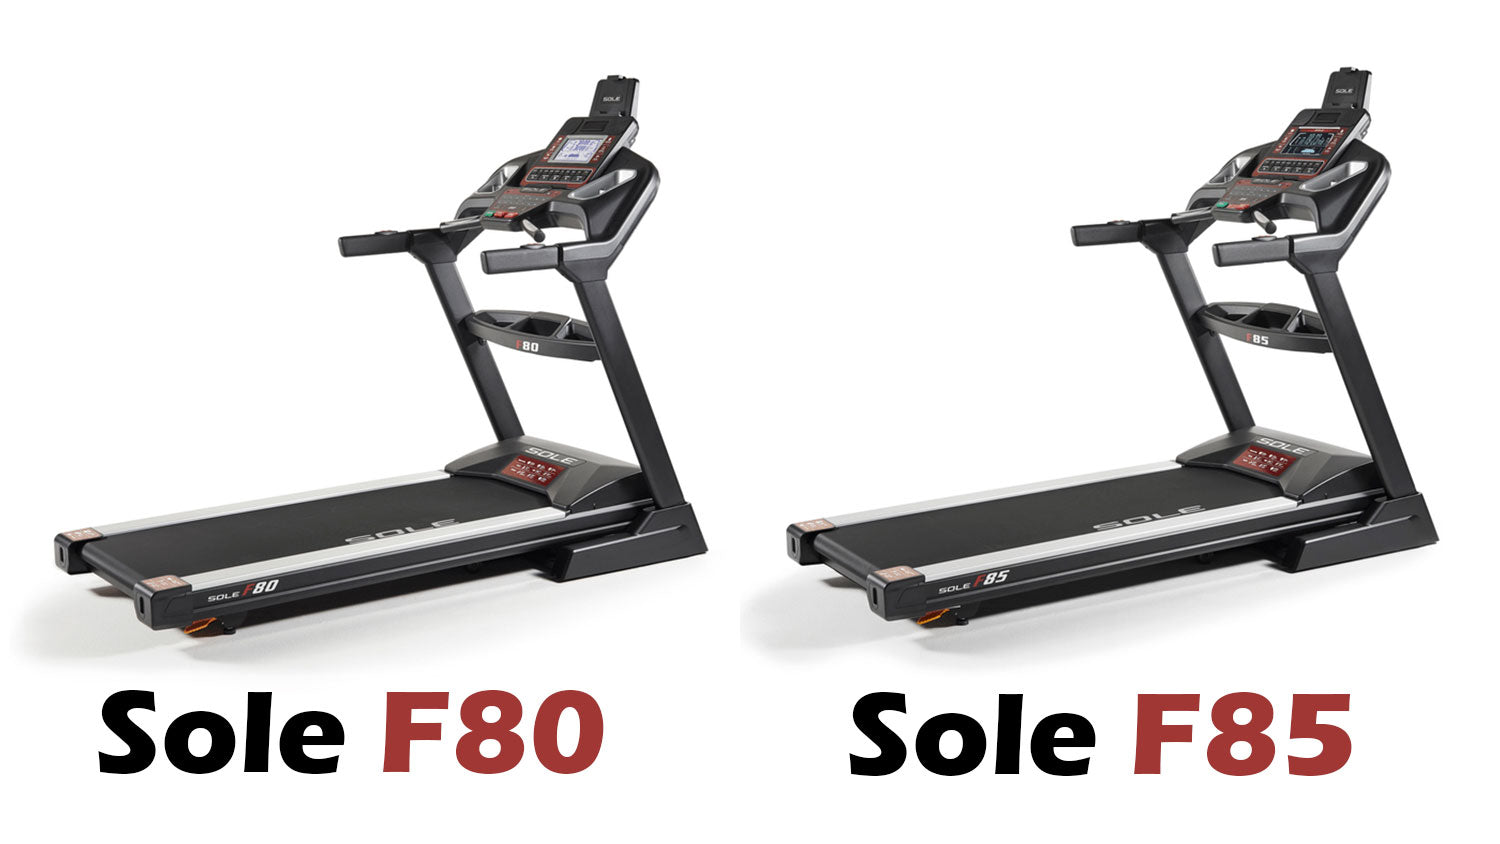 Sole F80 vs Sole F85 Treadmill Comparison